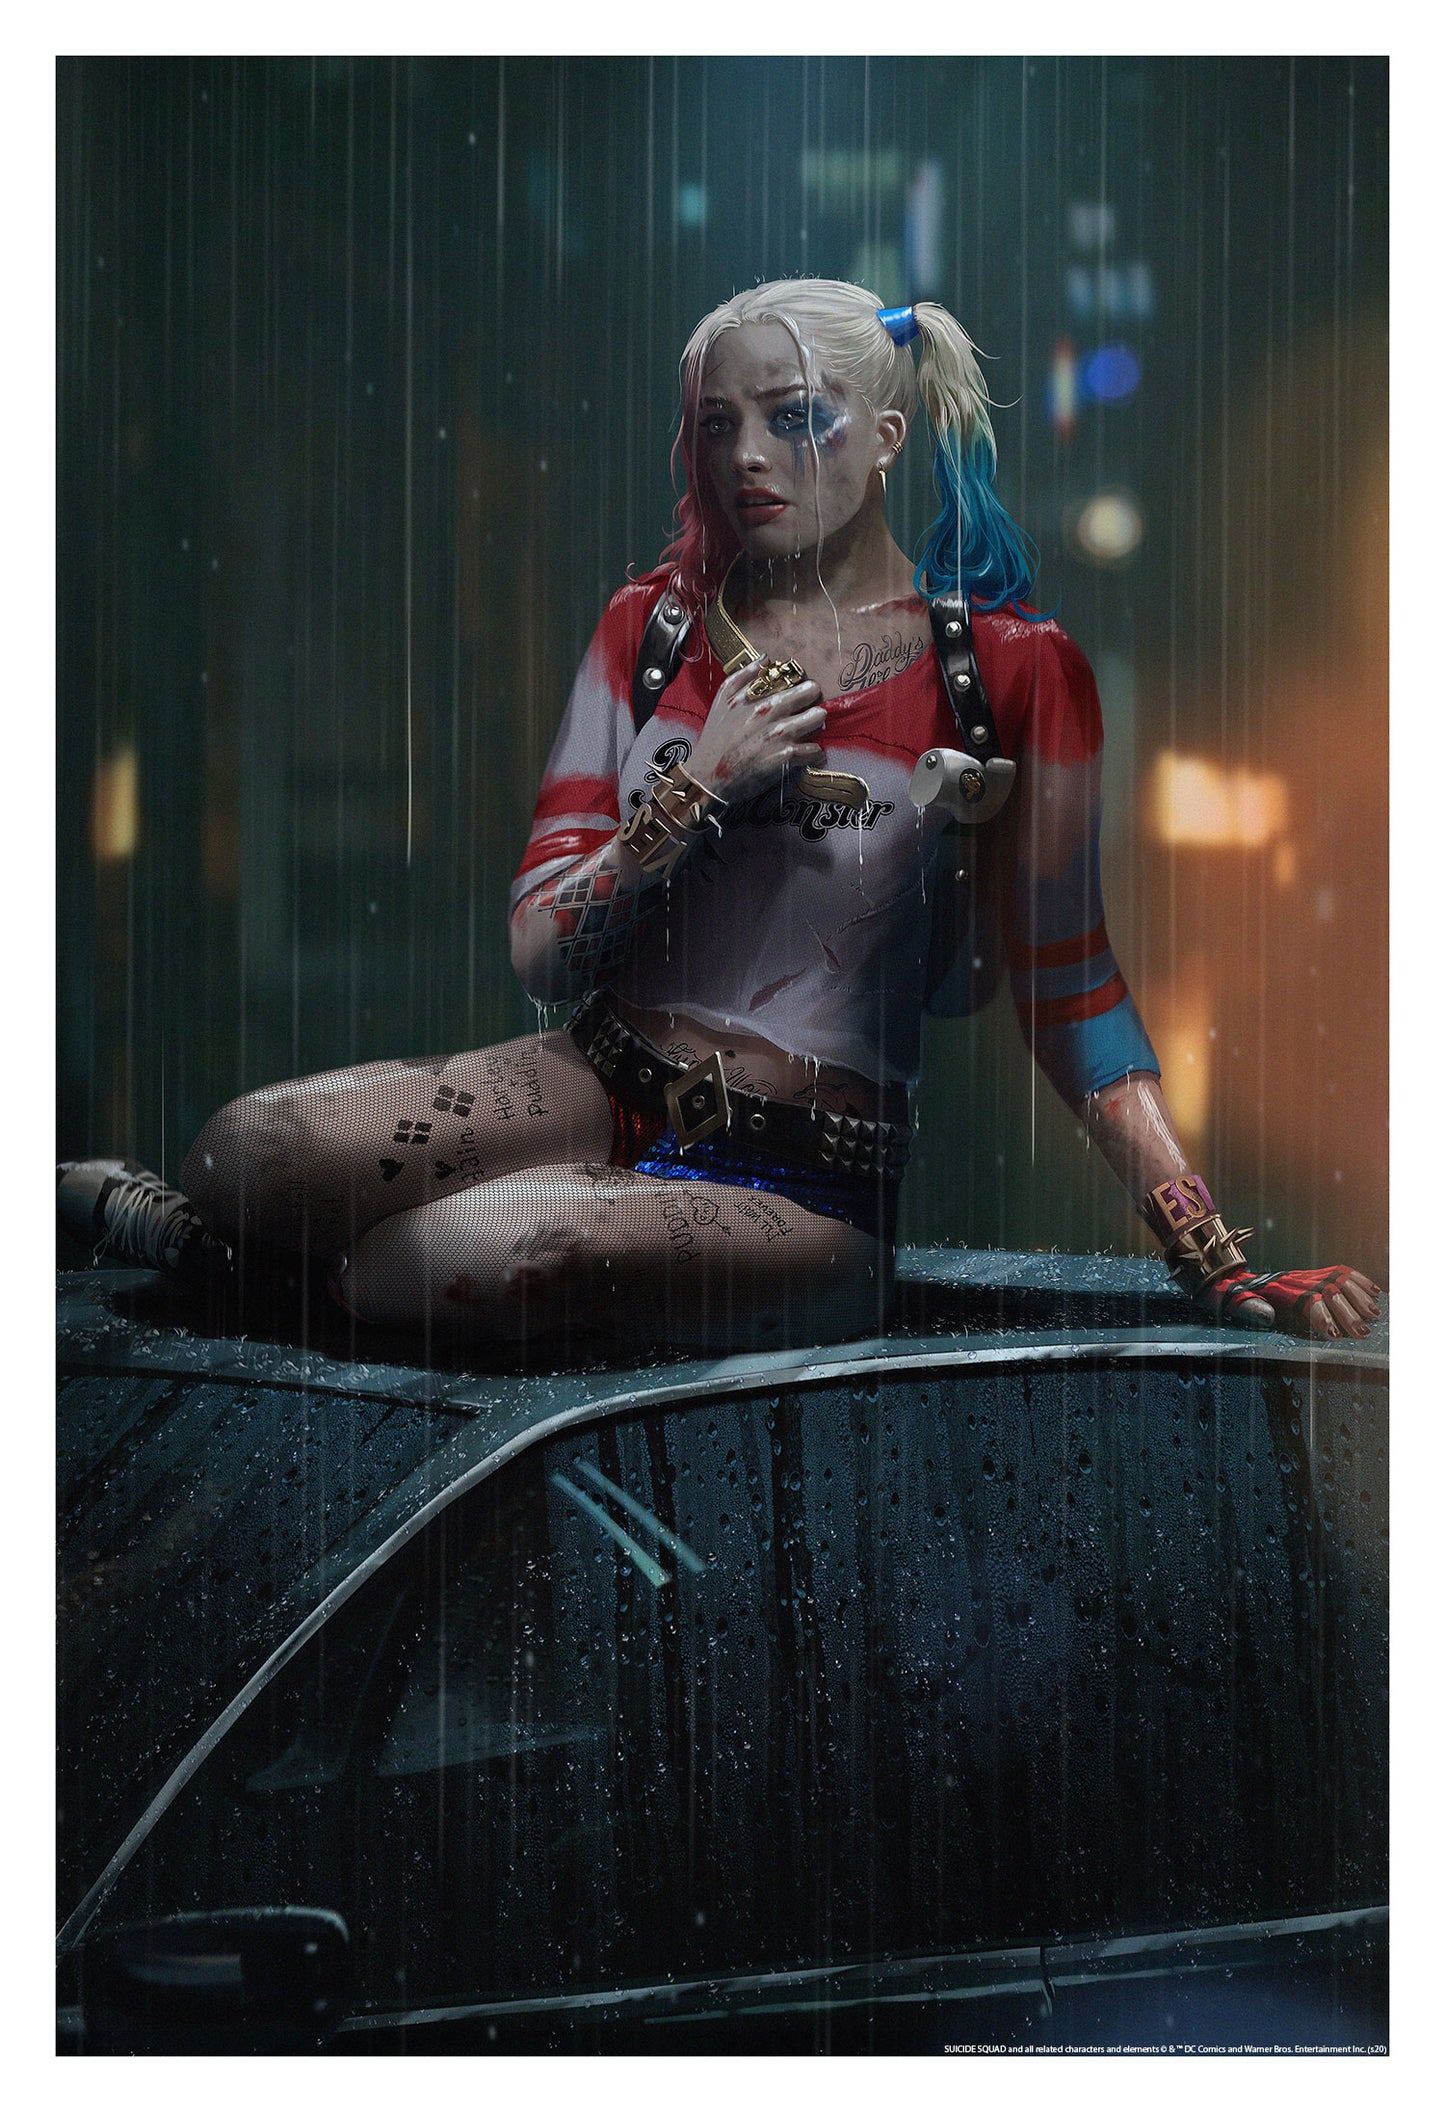 Ann Bembi "Harley Quinn"